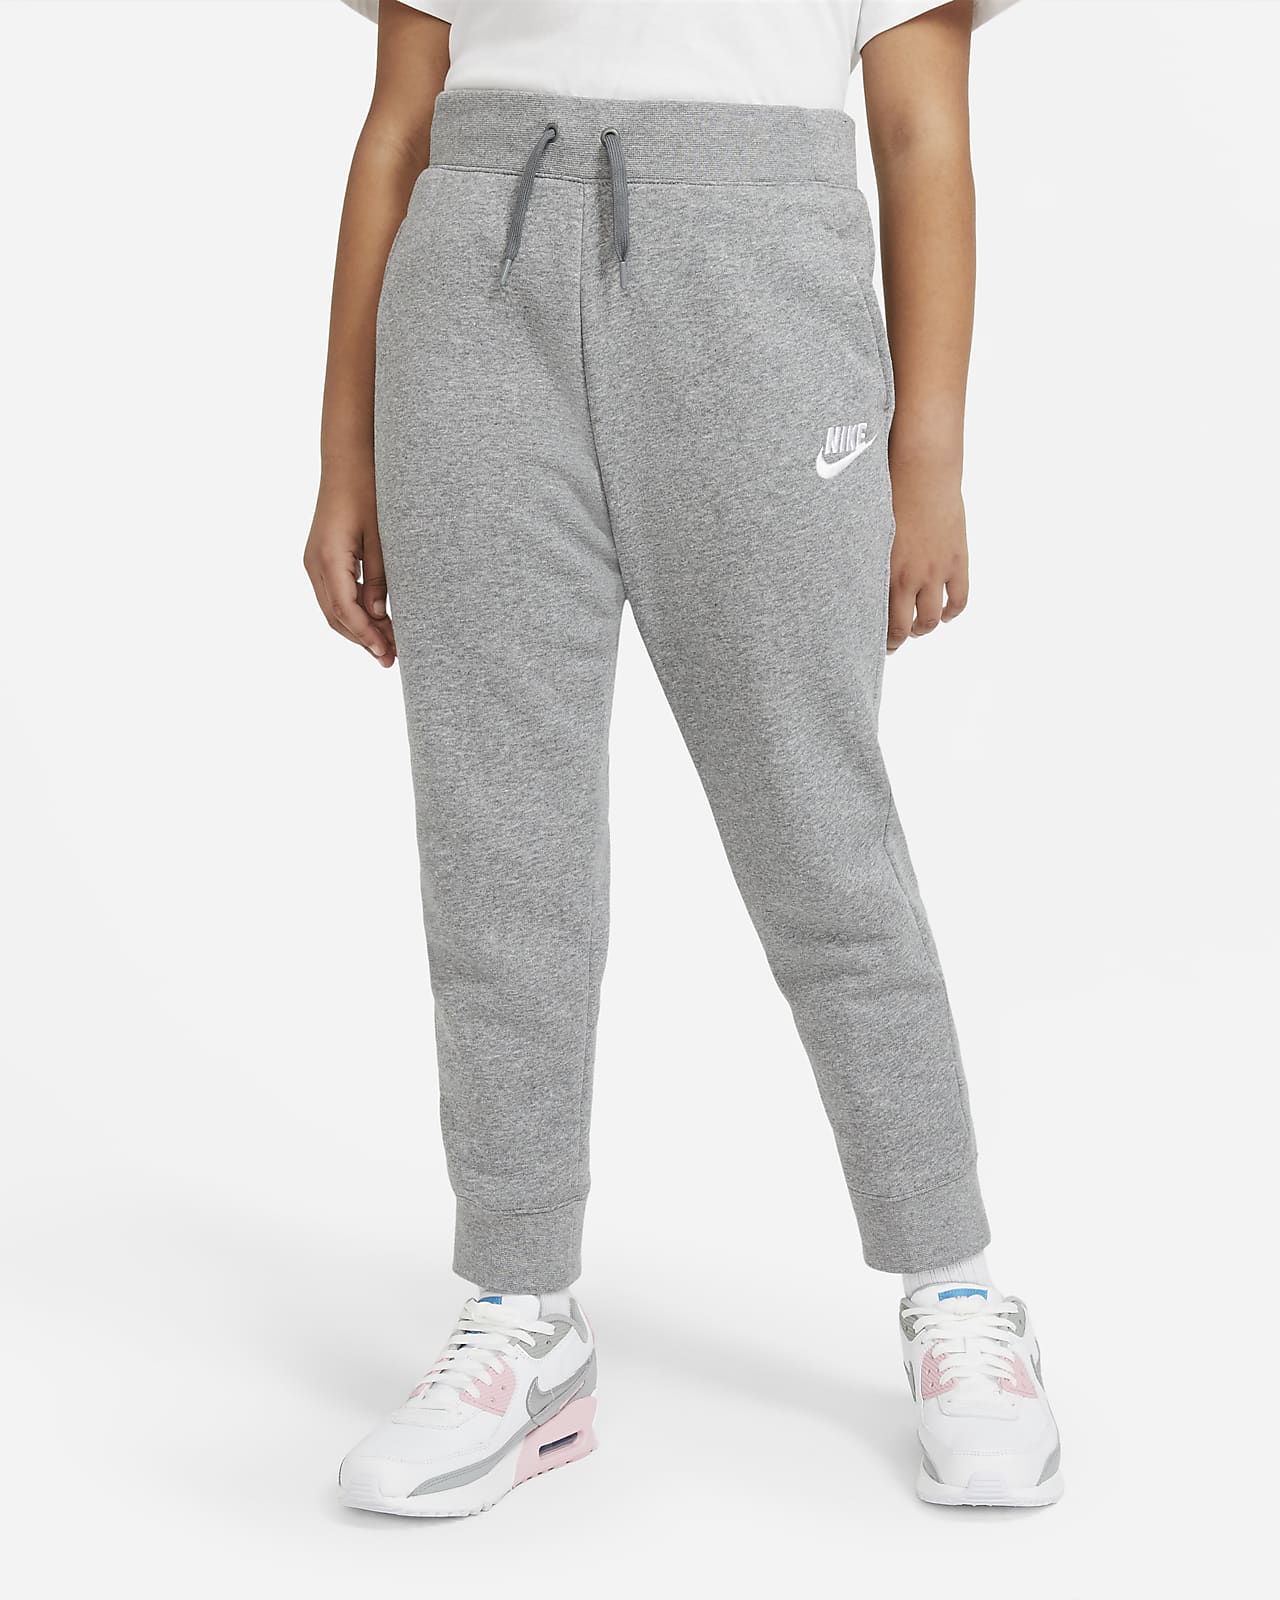 Nike Sportswear Older Kids' (Girls') Trousers (Extended Size)